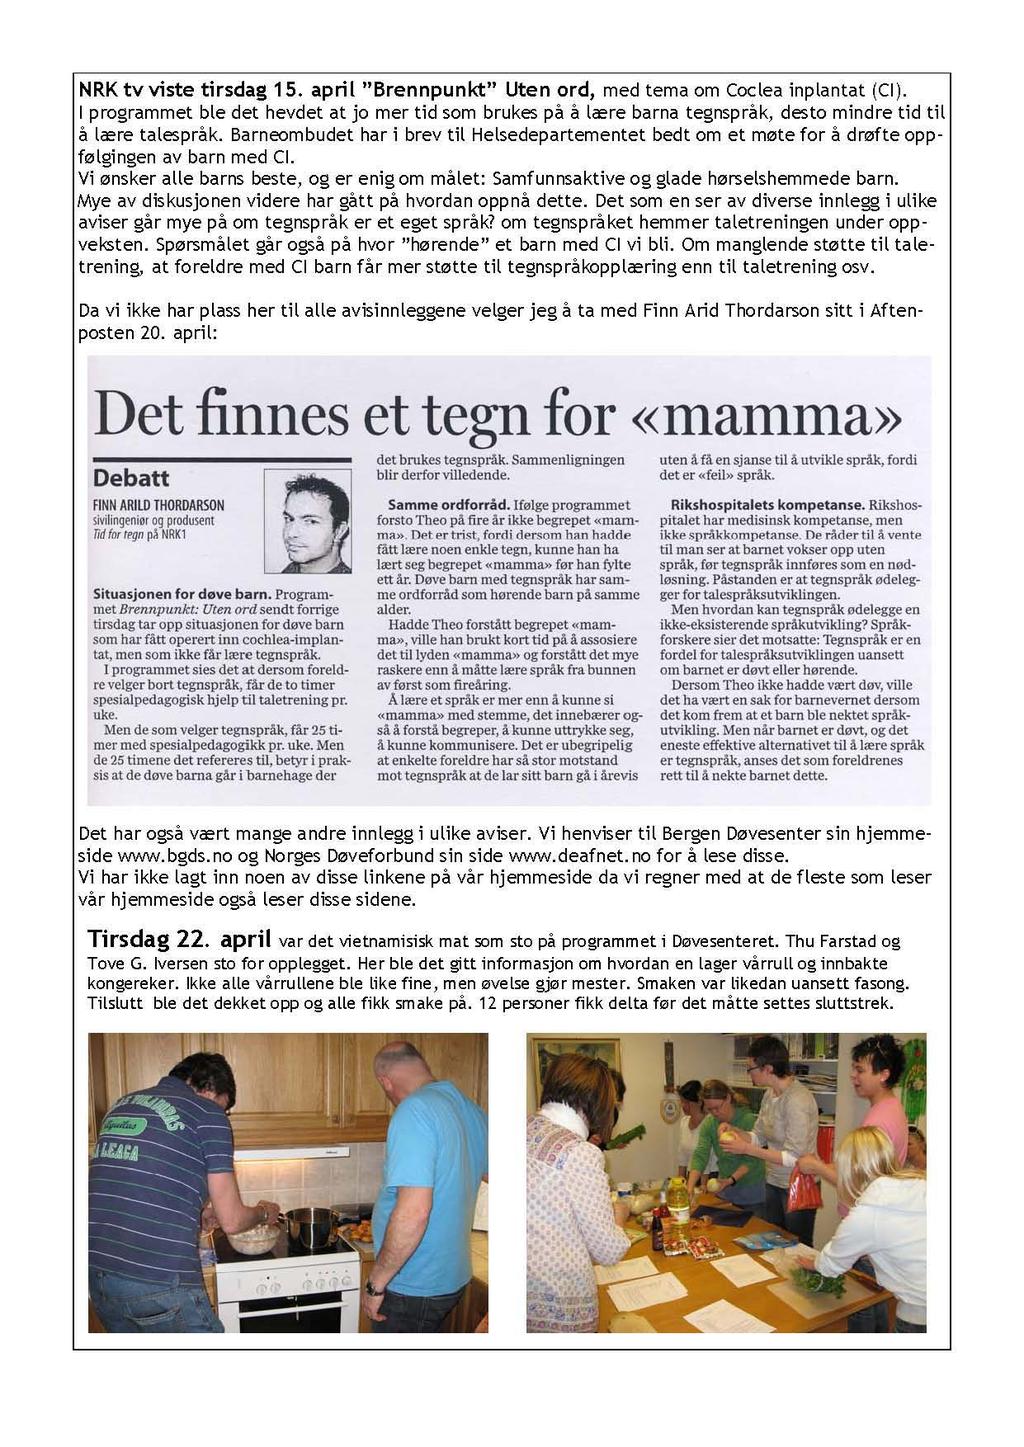 NRK tv viste tirsdag 15. april "Brennpunkt" Uten ord, med tema om Coclea inplantat (Cl).